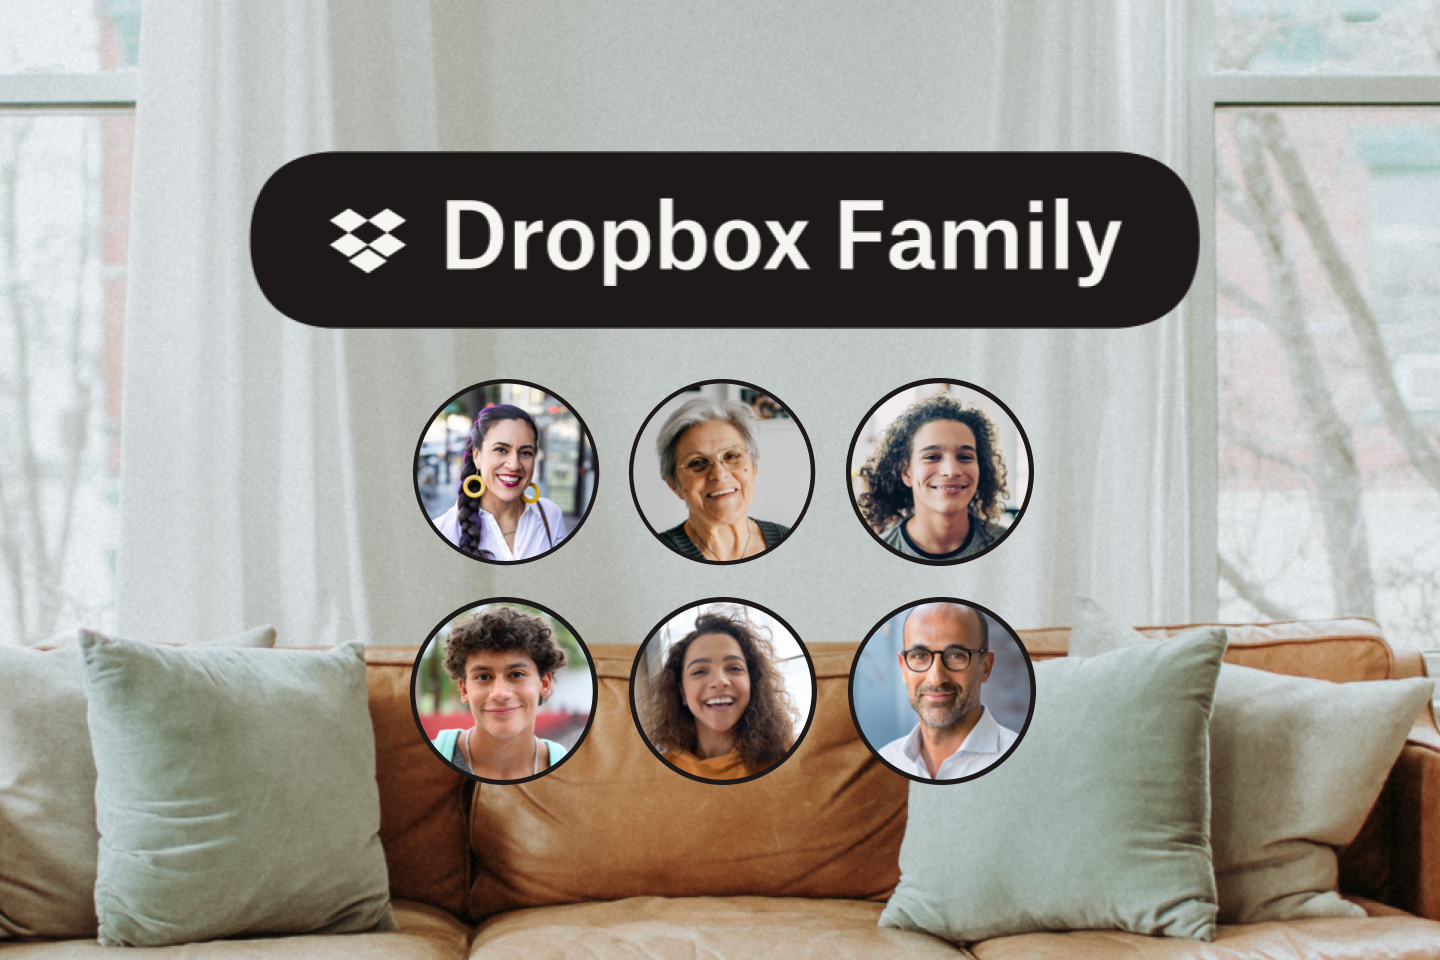 革製ソファと家族のアイコン写真 6 つ、Dropbox Family のロゴ